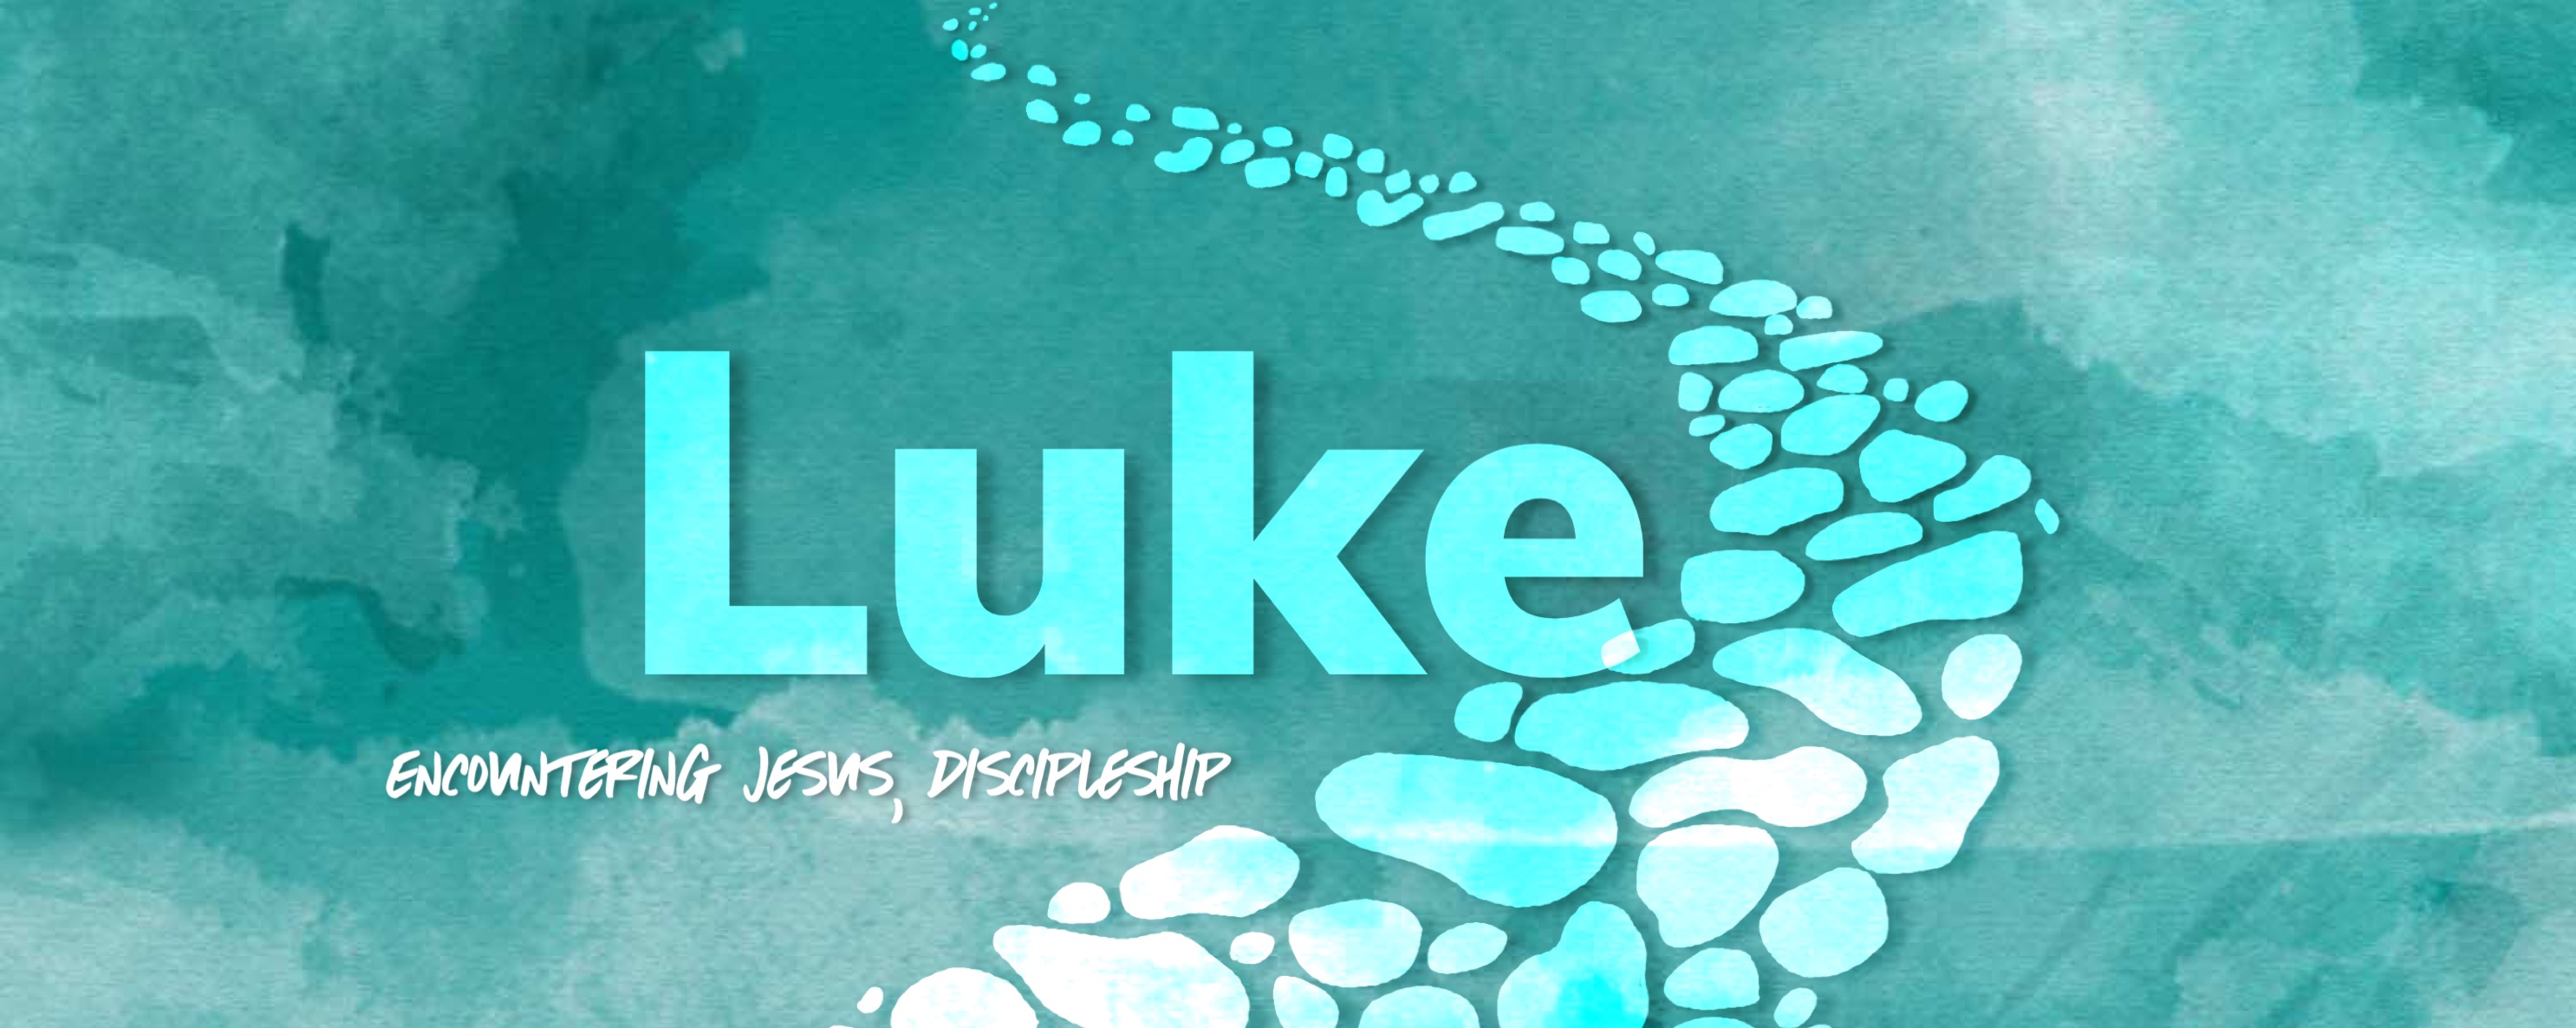 Luke: Encountering Jesus, Discipleship banner